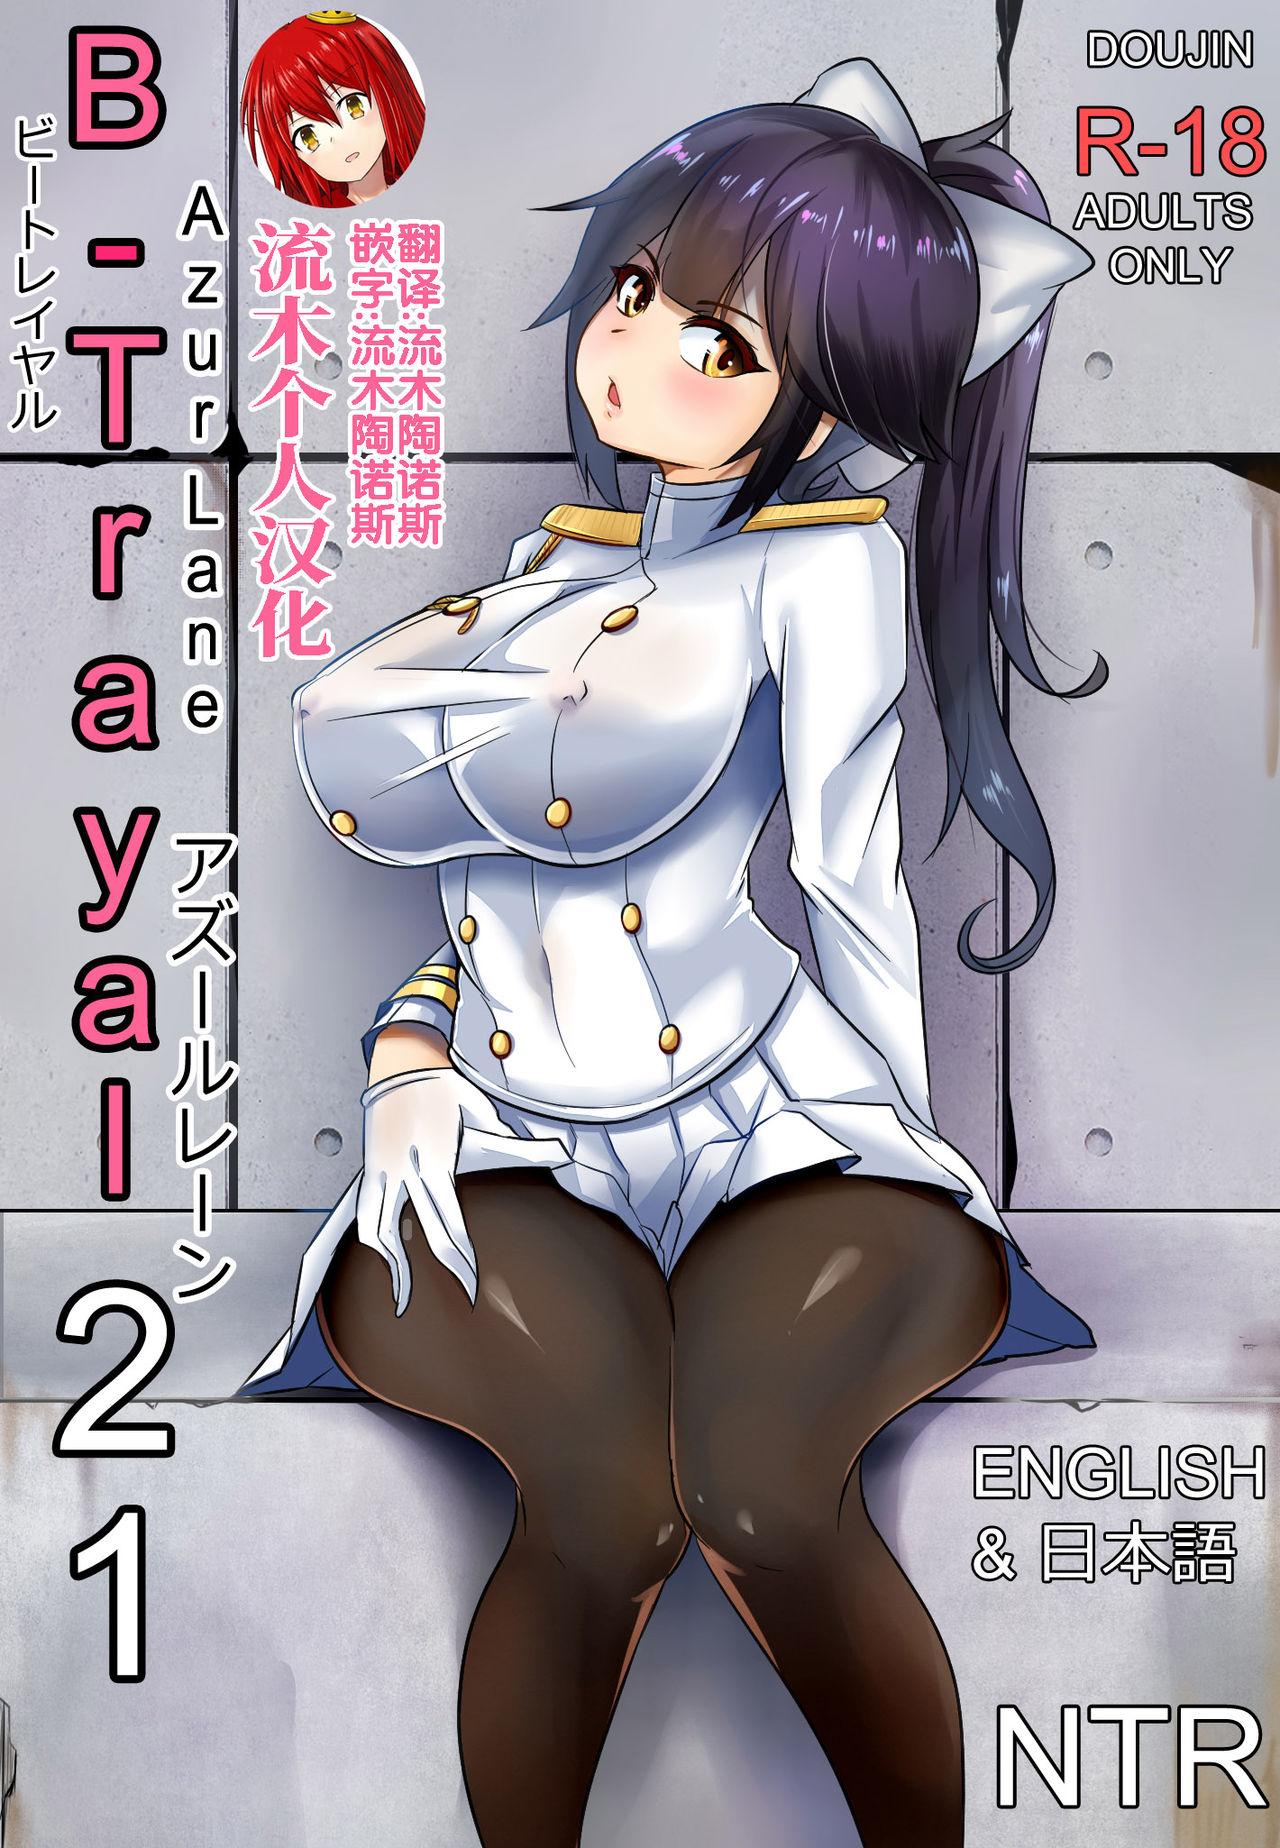 Ginger B-Trayal 21 高雄 - Azur lane Anal Licking - Picture 1